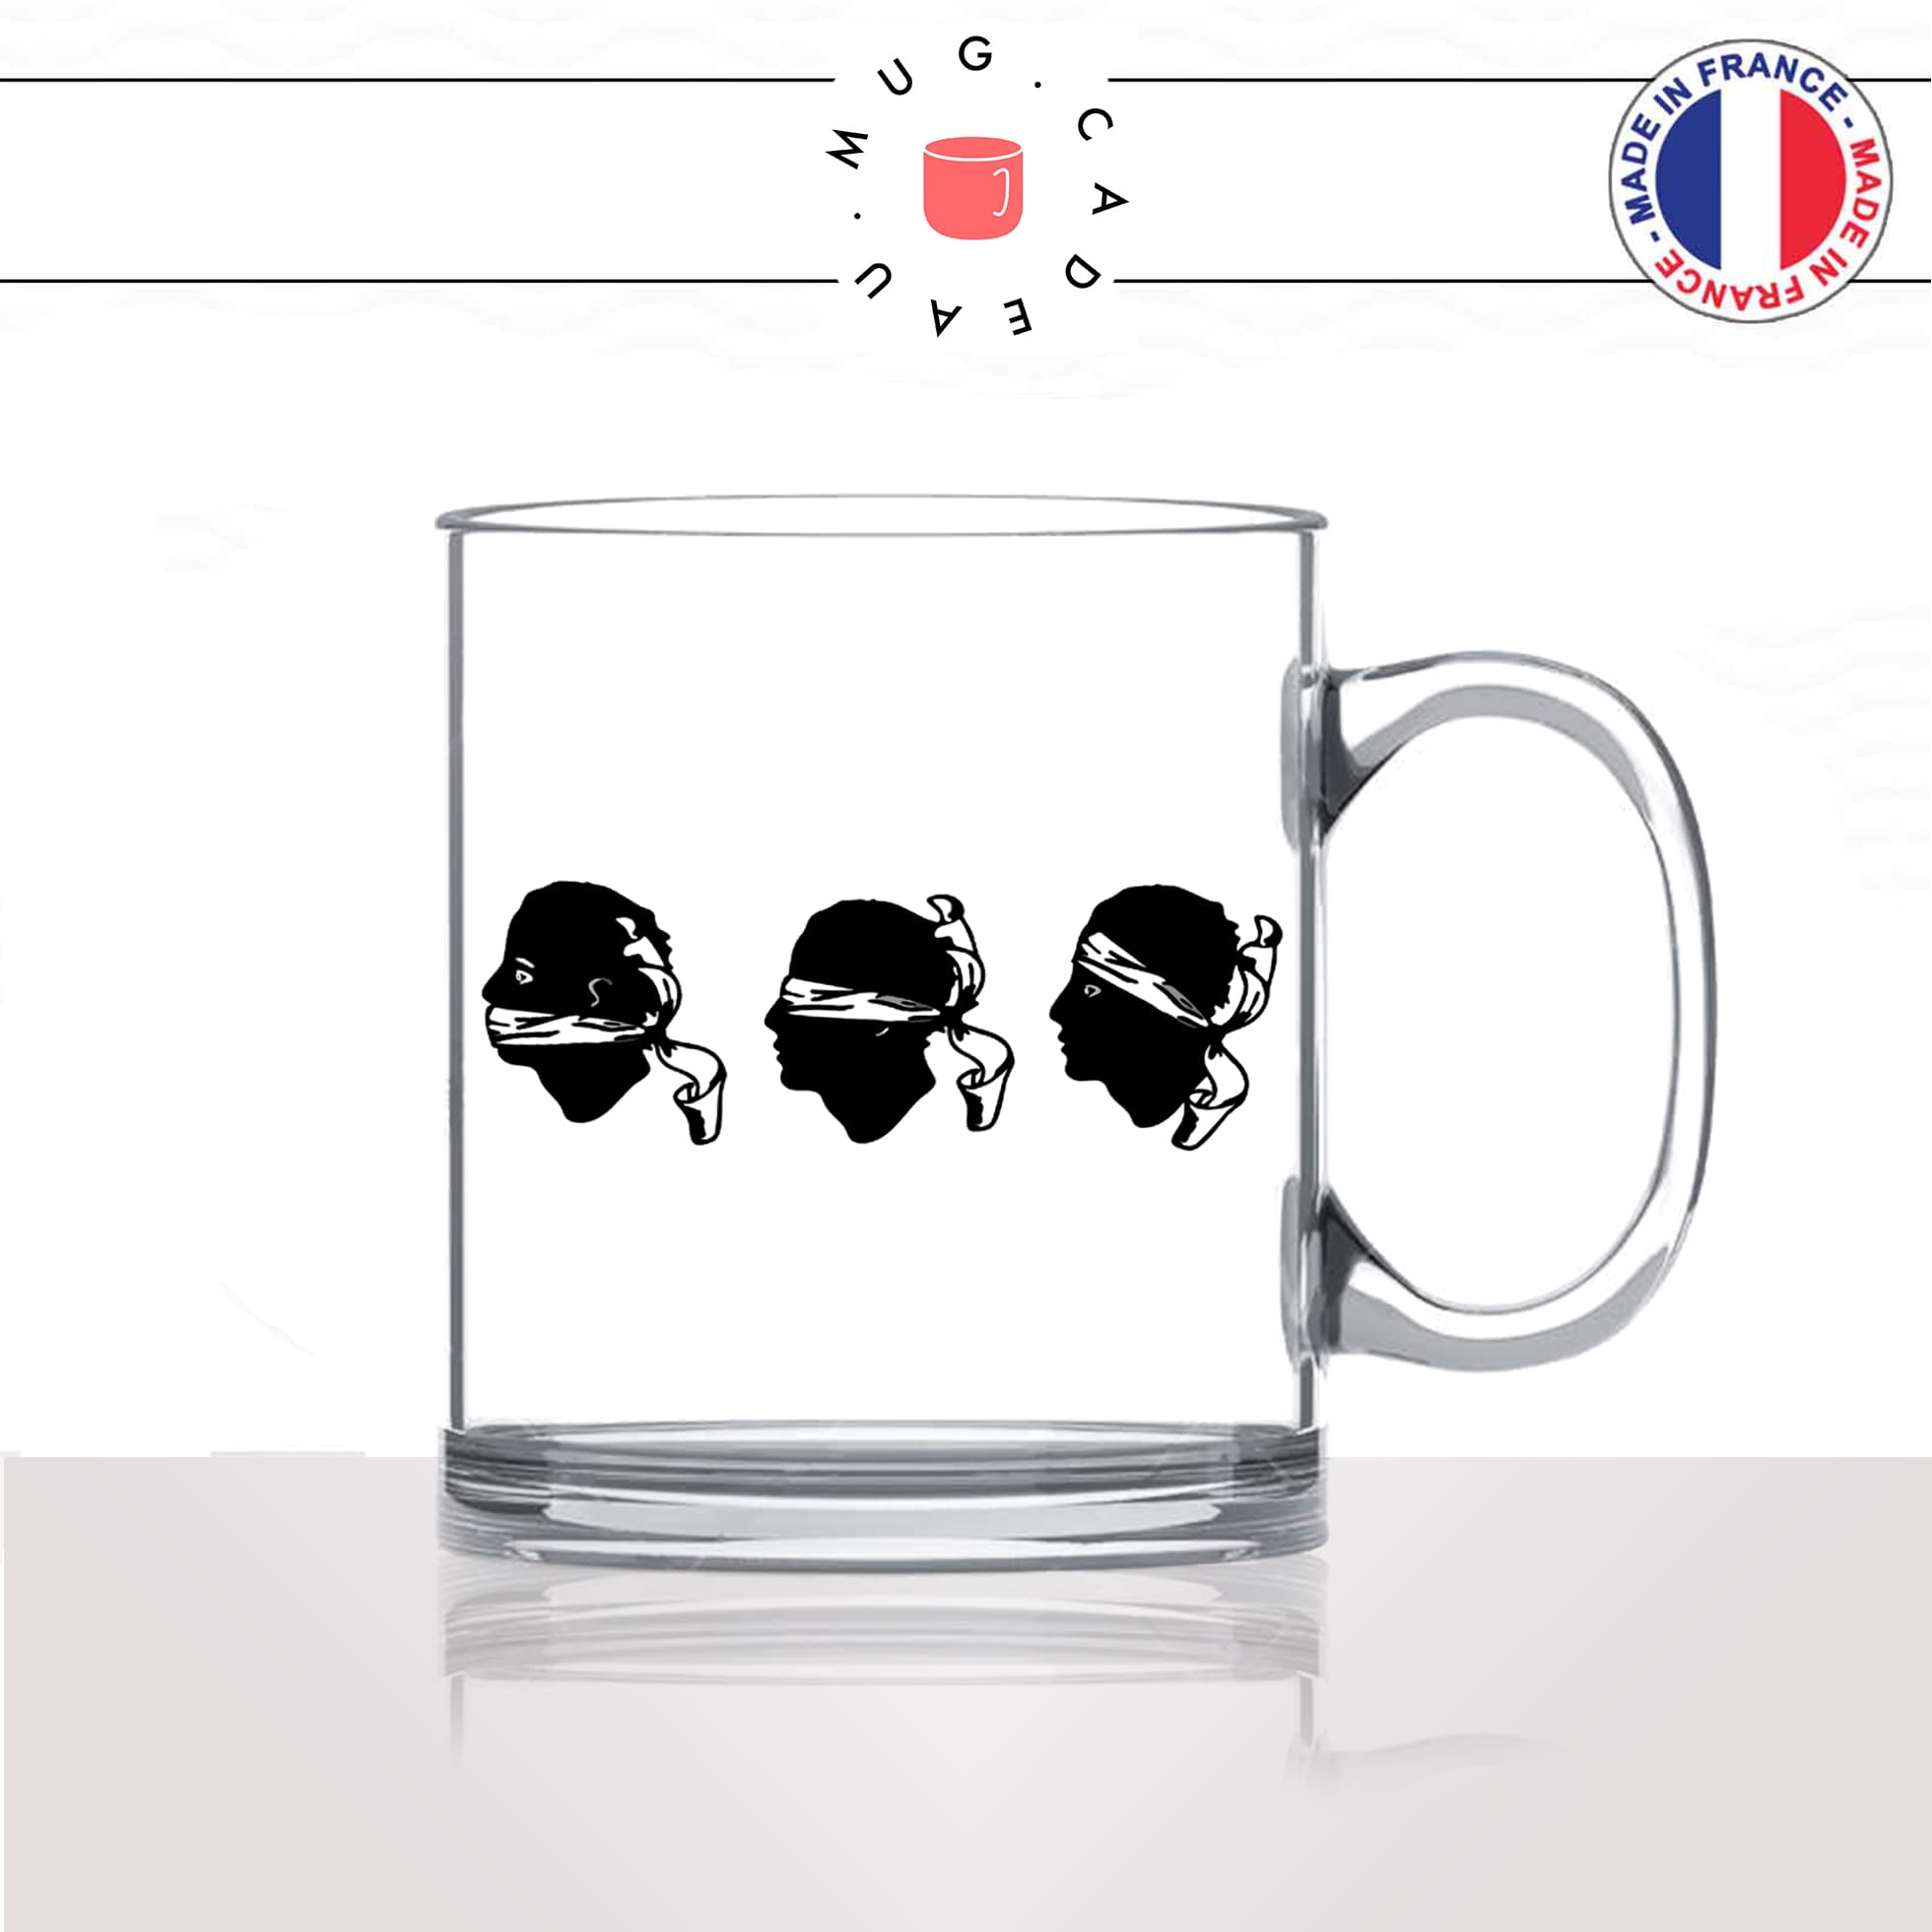 mug-tasse-en-verre-transparent-glass-tetes-de-maures-corse-corsica-aveugle-sourd-muet-ile-de-beauté-humour-idée-cadeau-fun-cool-café-thé2